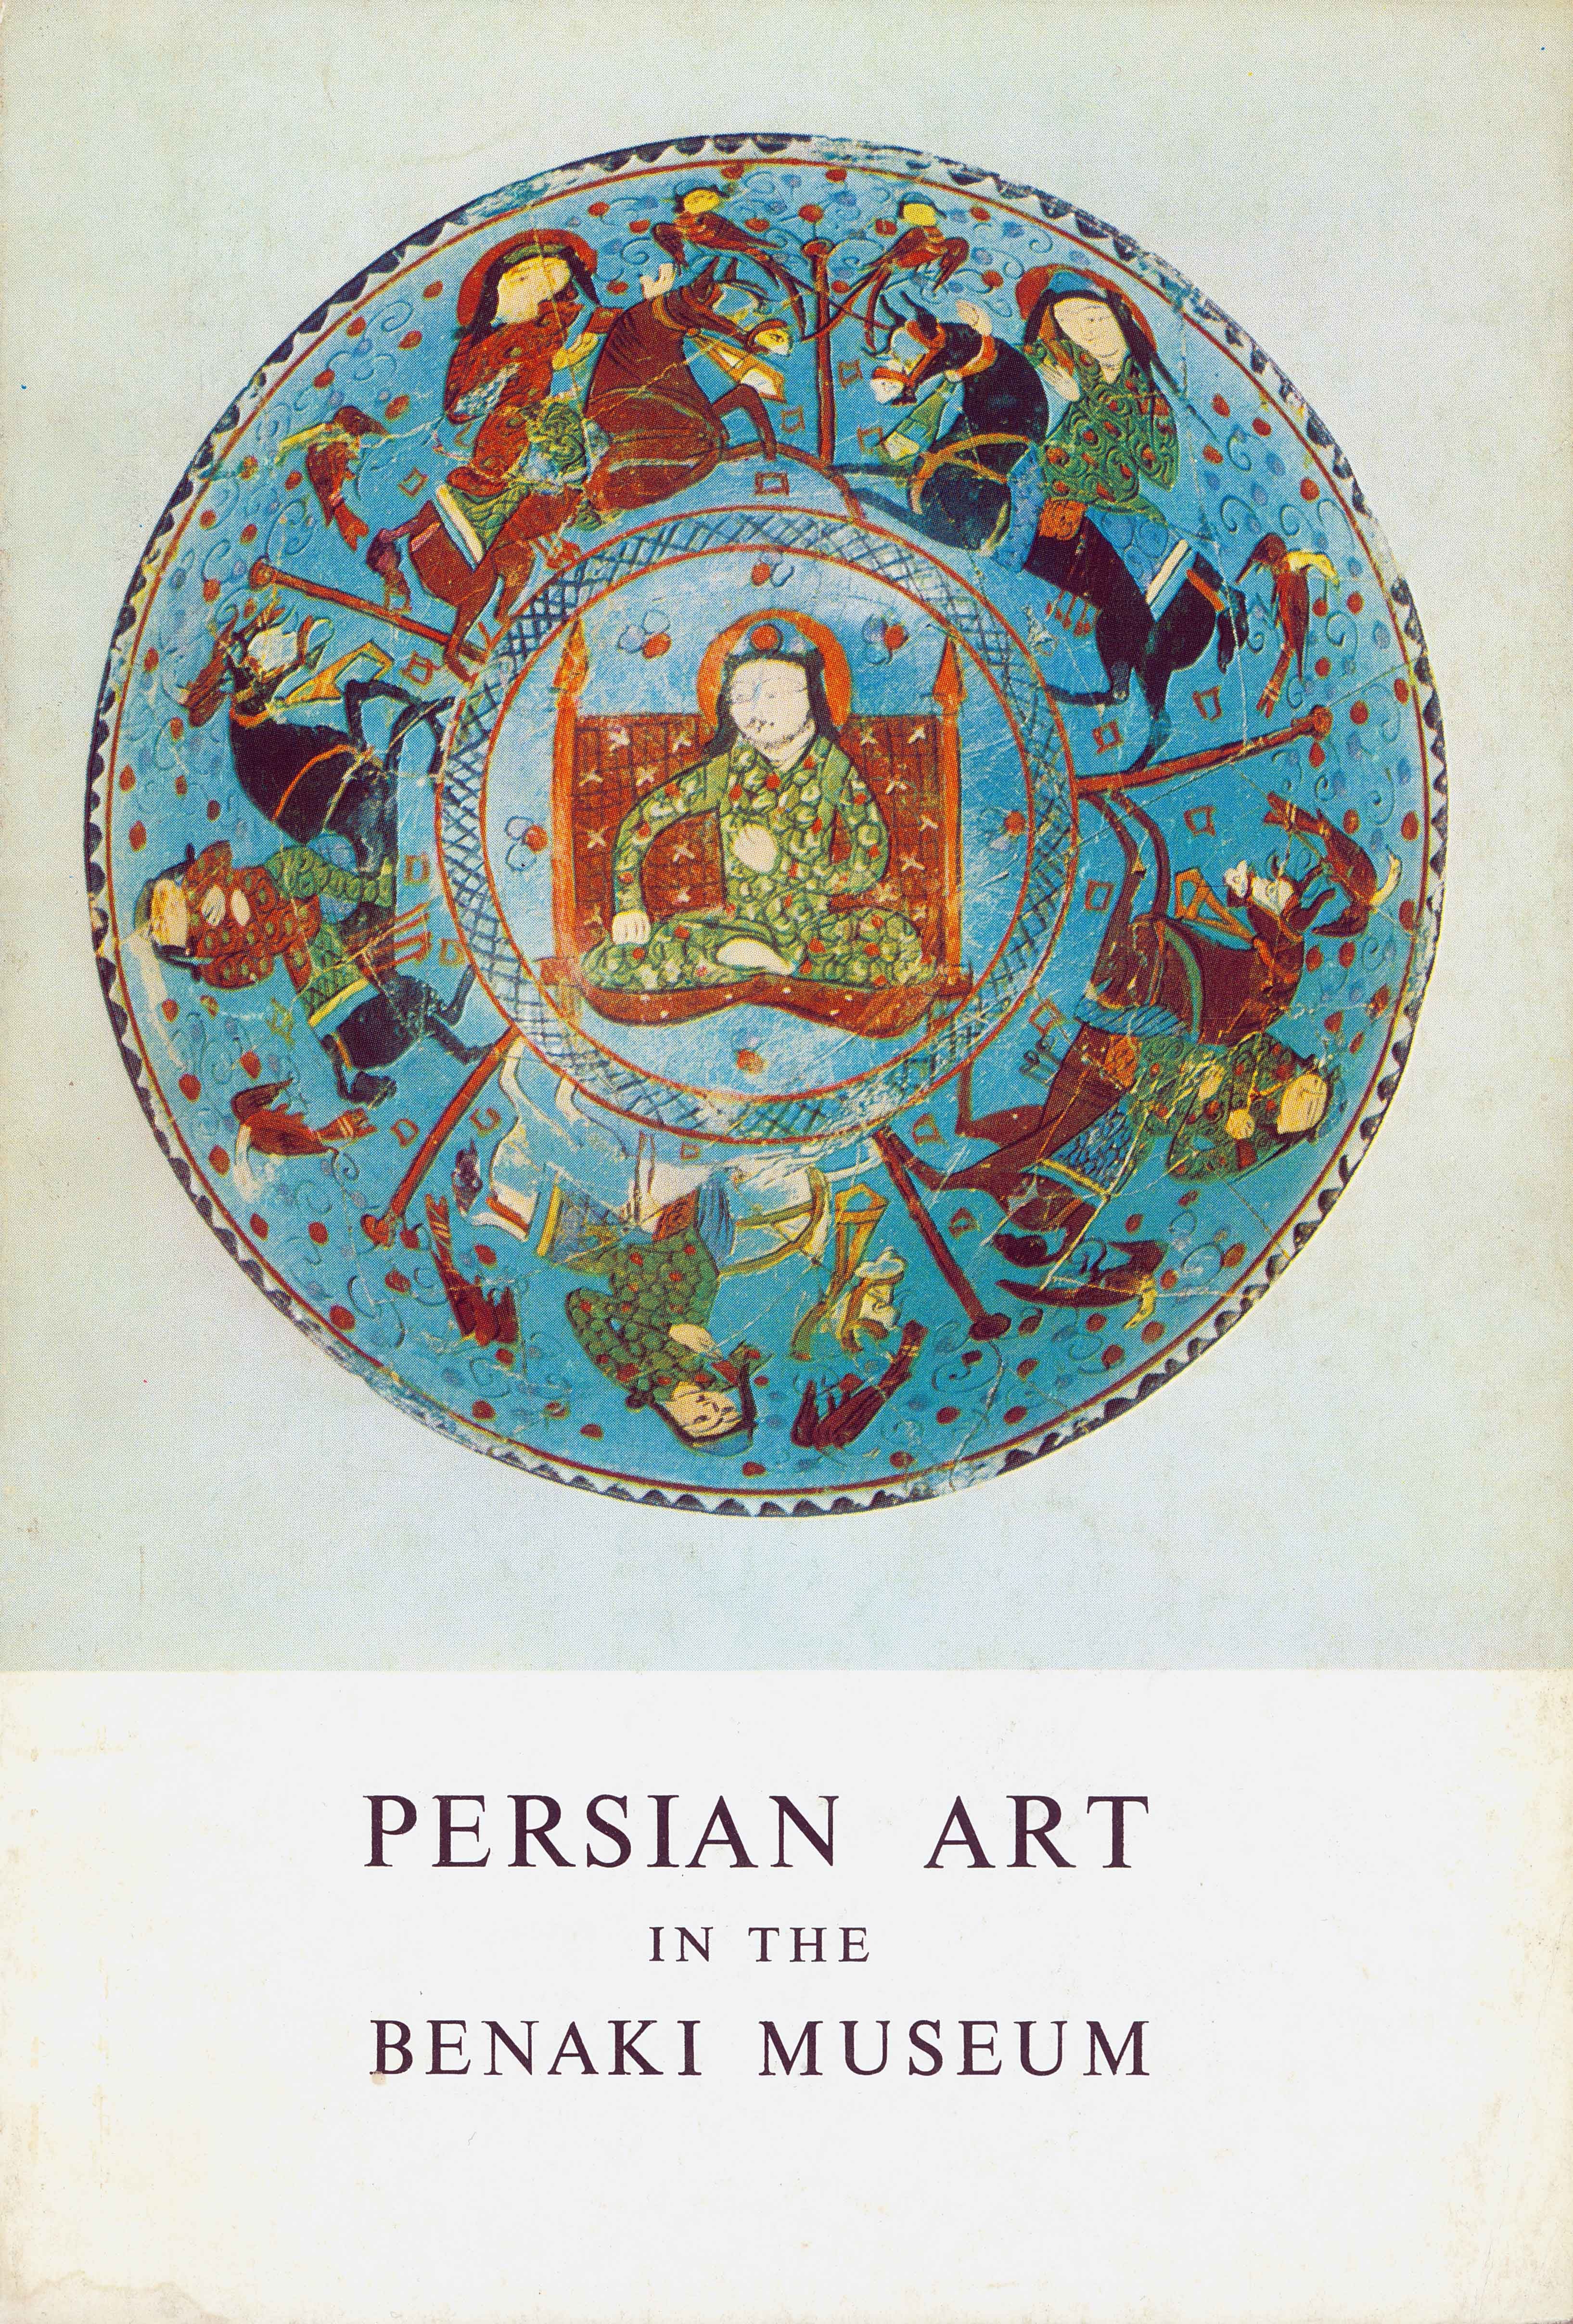 Persian art at the Benaki Museum